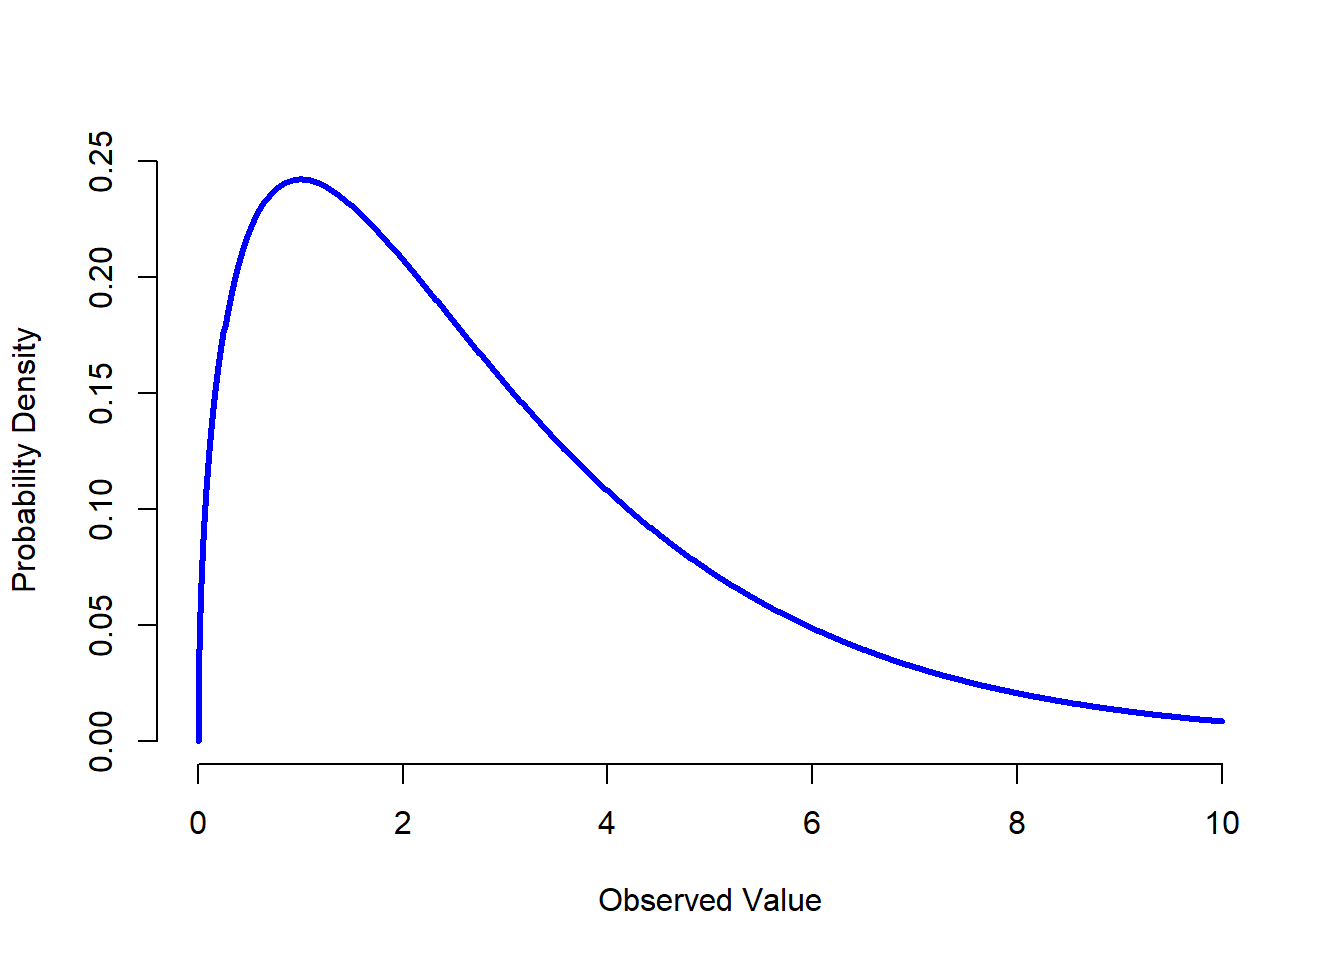 Una distribución $chi^2$ con 3 grados de libertad. Observa que los valores siempre deben ser mayores que cero (los valores se elevan al cuadrado y se suman), y que la distribución es bastante sesgada (en este caso hacia la izquierda). Estas son las características clave de una distribución chi-cuadrado.